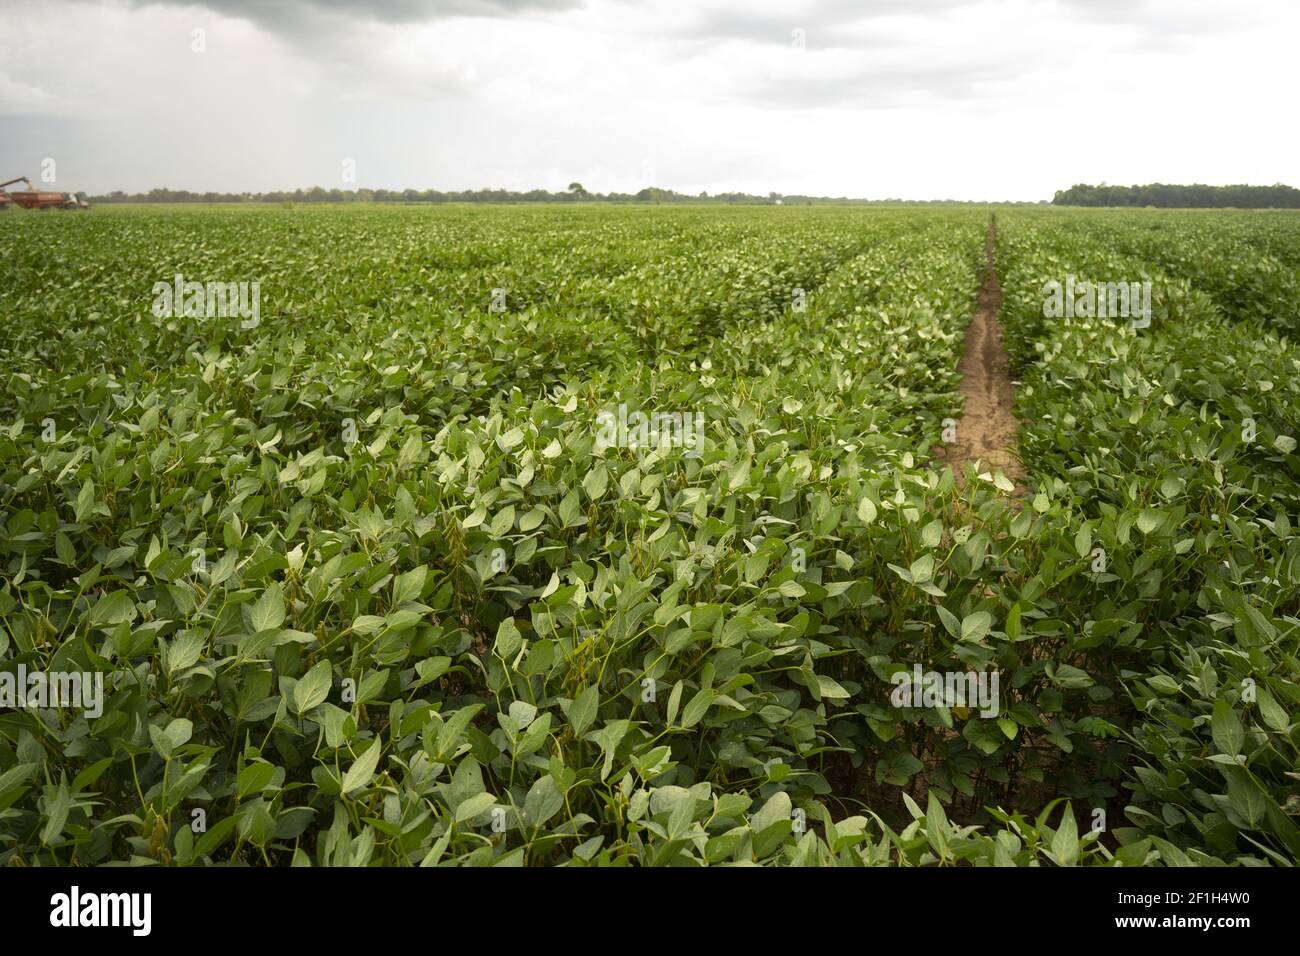 Las judías de soja crecen grandes y exuberantes en el sur profundo EE.UU Foto de stock